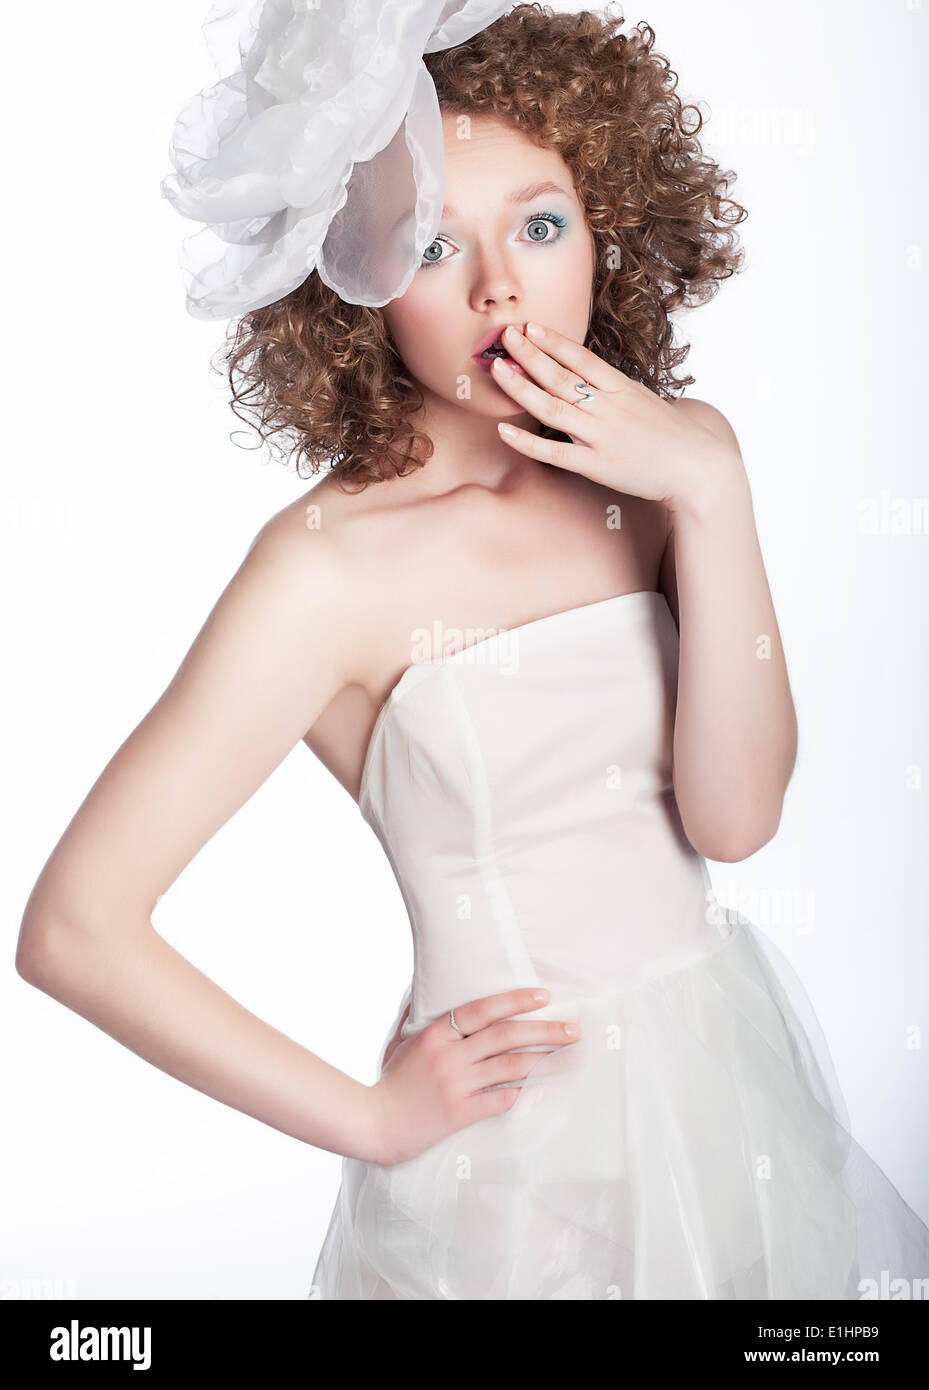 Jolie jeune femme a surpris en robe de mariée blanche isolée Studio shot Banque D'Images